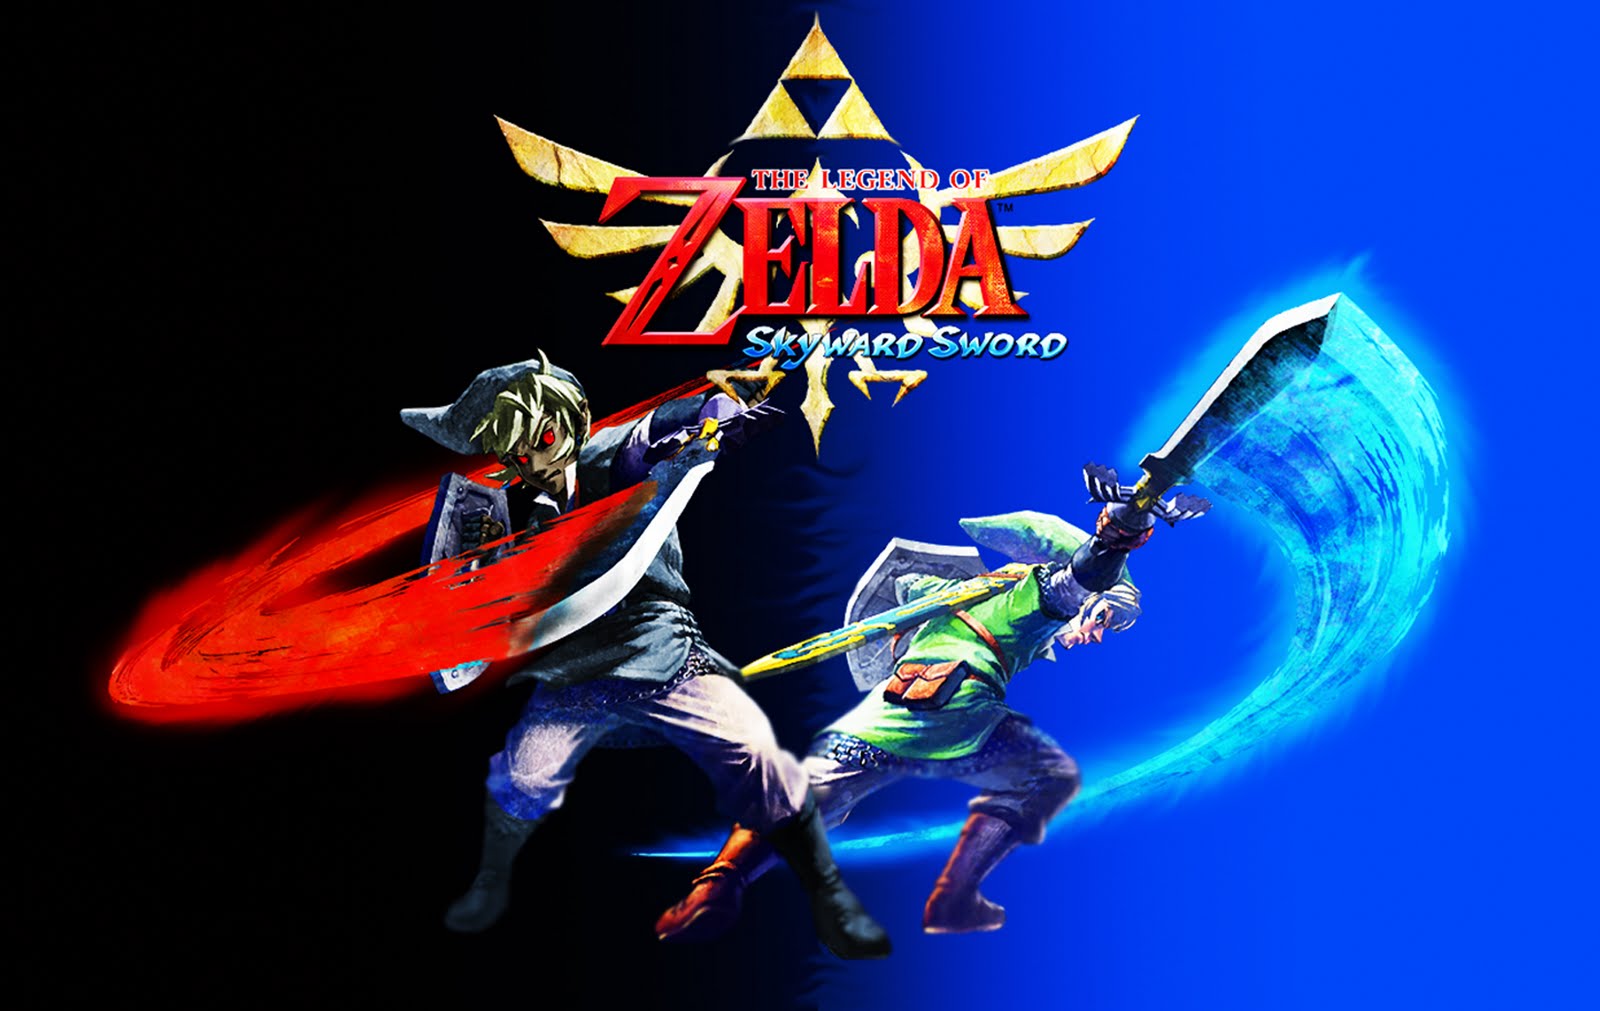 Wallpaper De The Legend Of Zelda Skyward Sword HD Dragonxoft